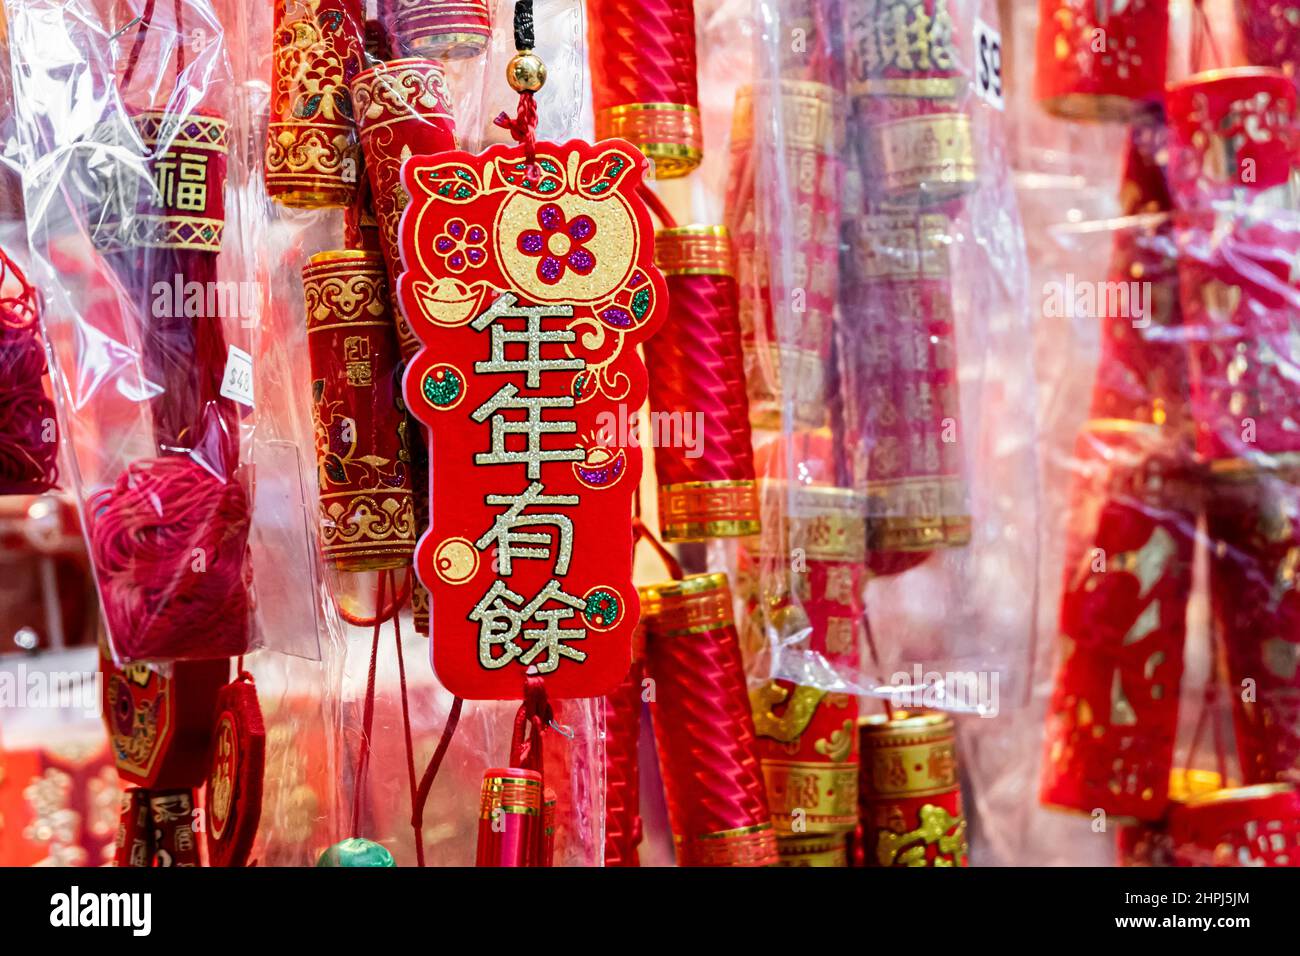 Des ornements chinois accrochés dans les magasins du marché pendant le nouvel an chinois Banque D'Images